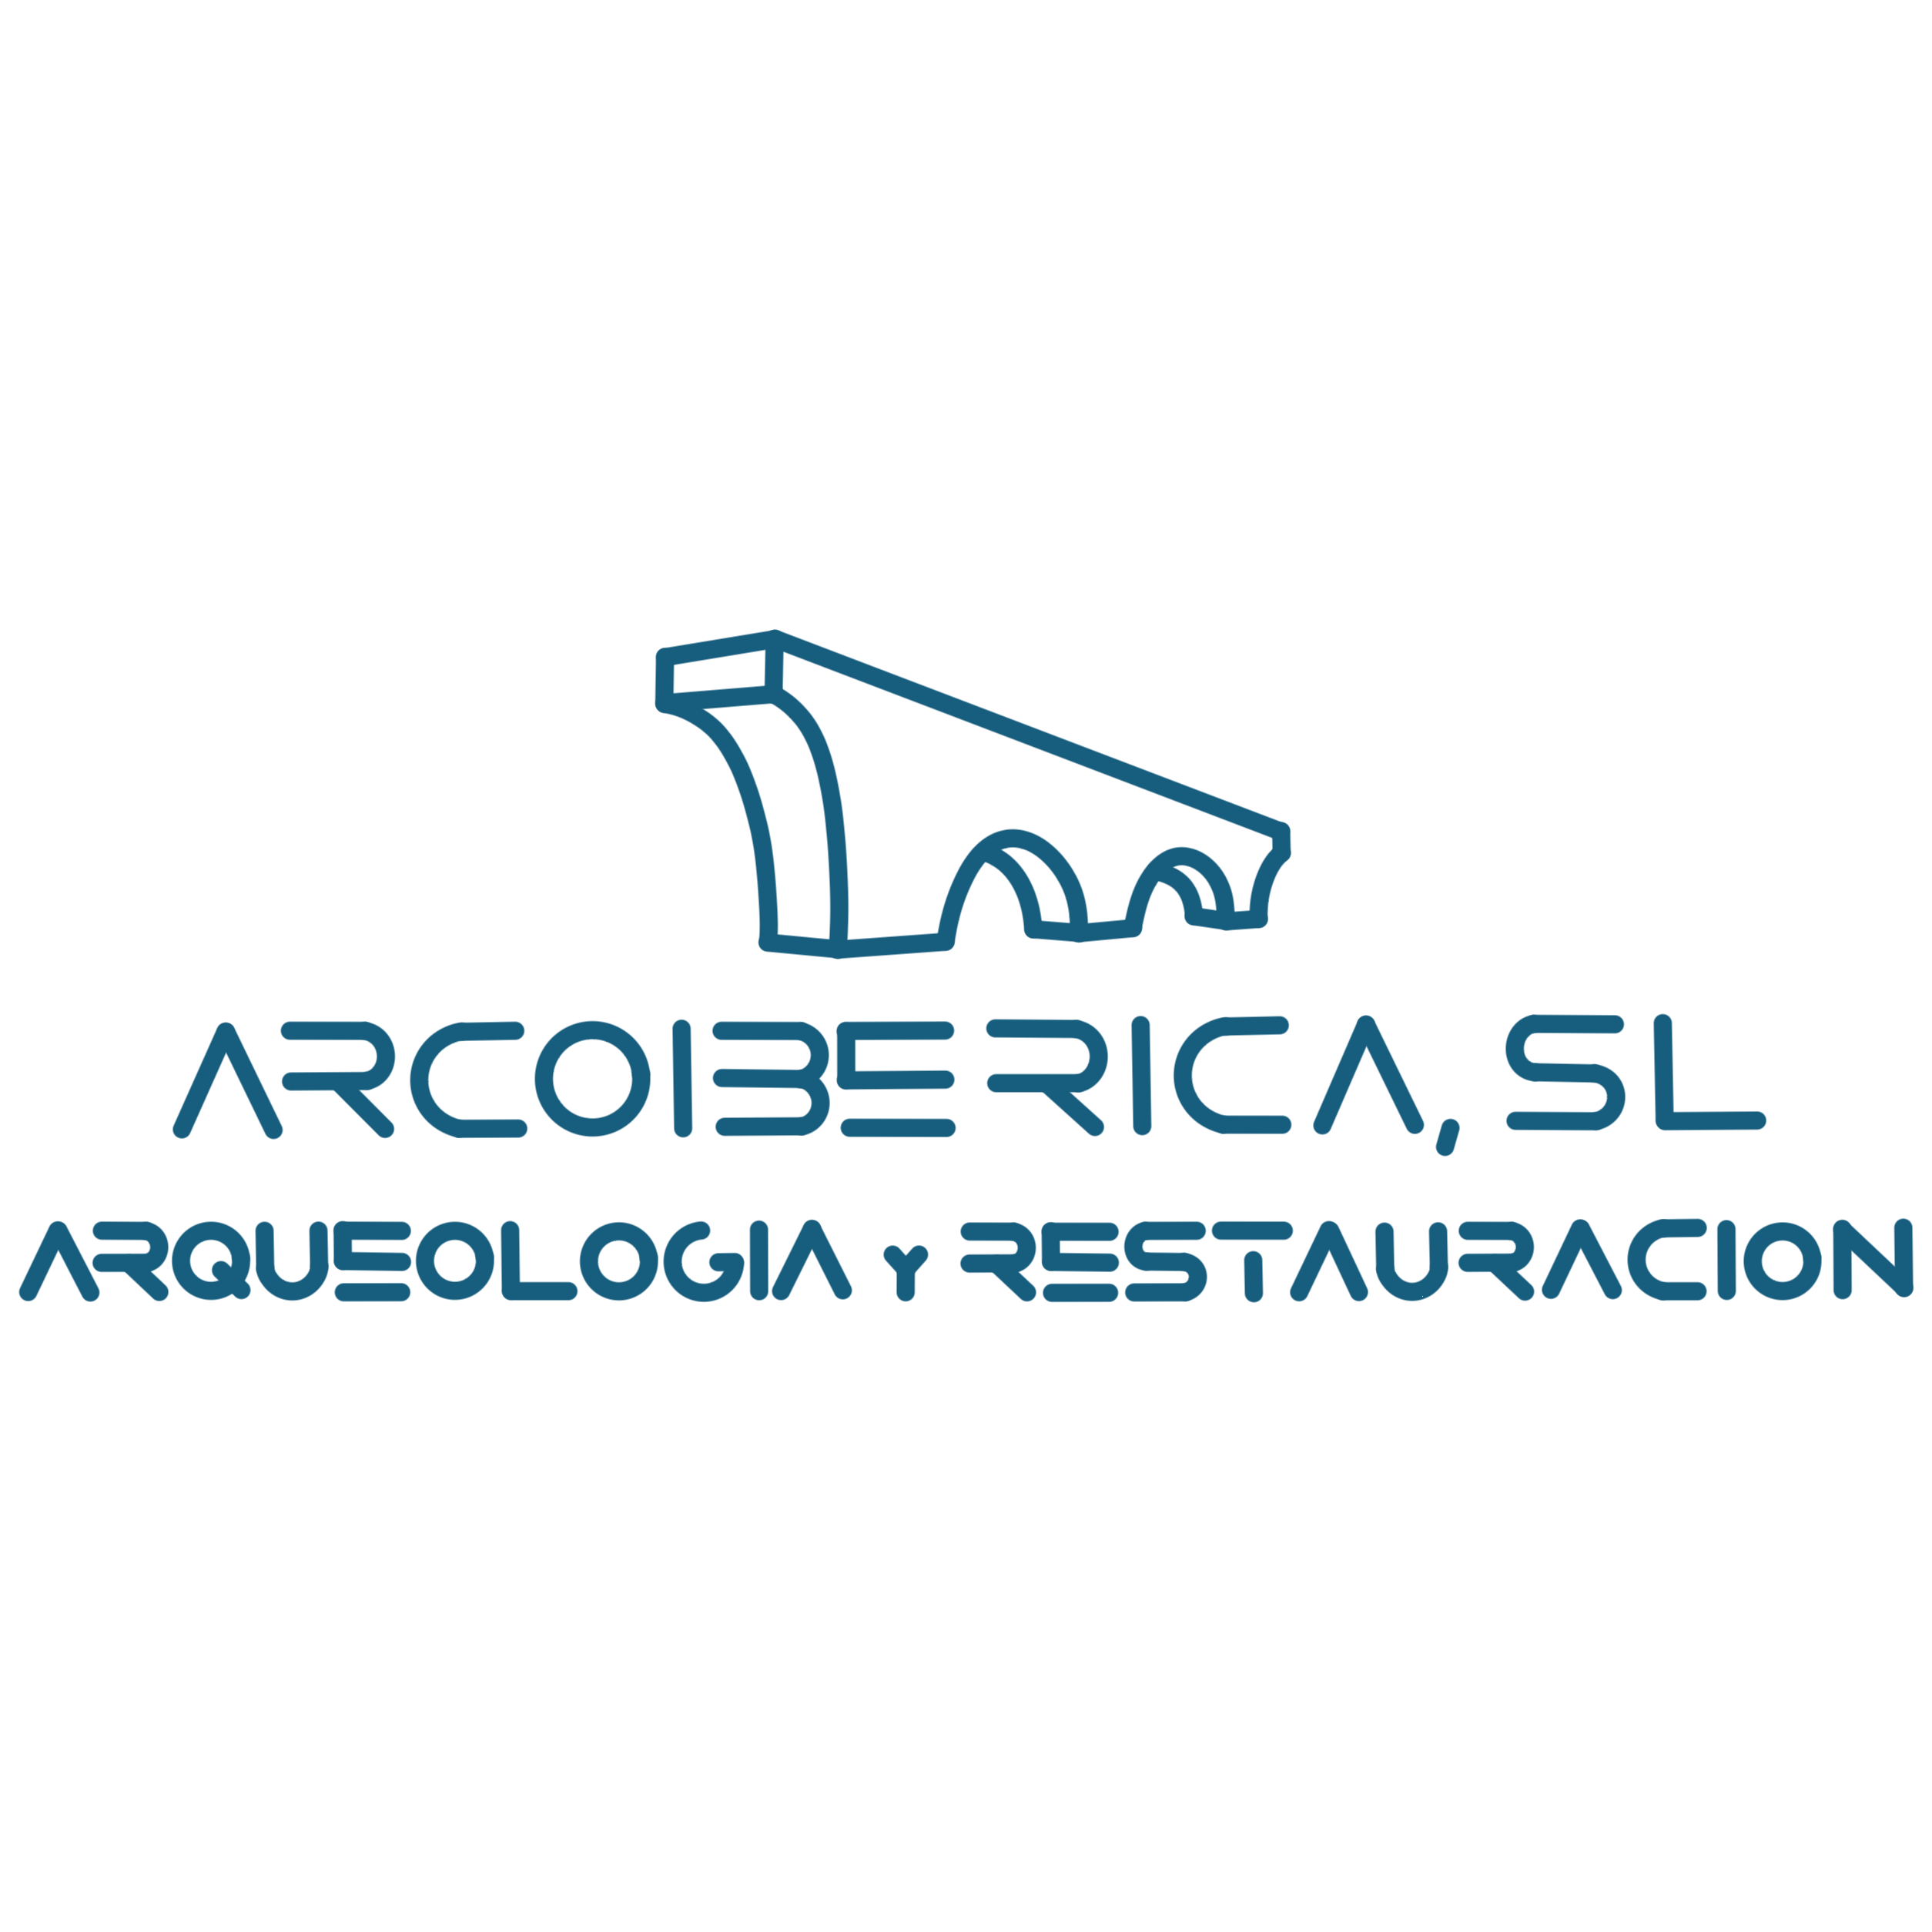 Arcoiberica Cultural Logo